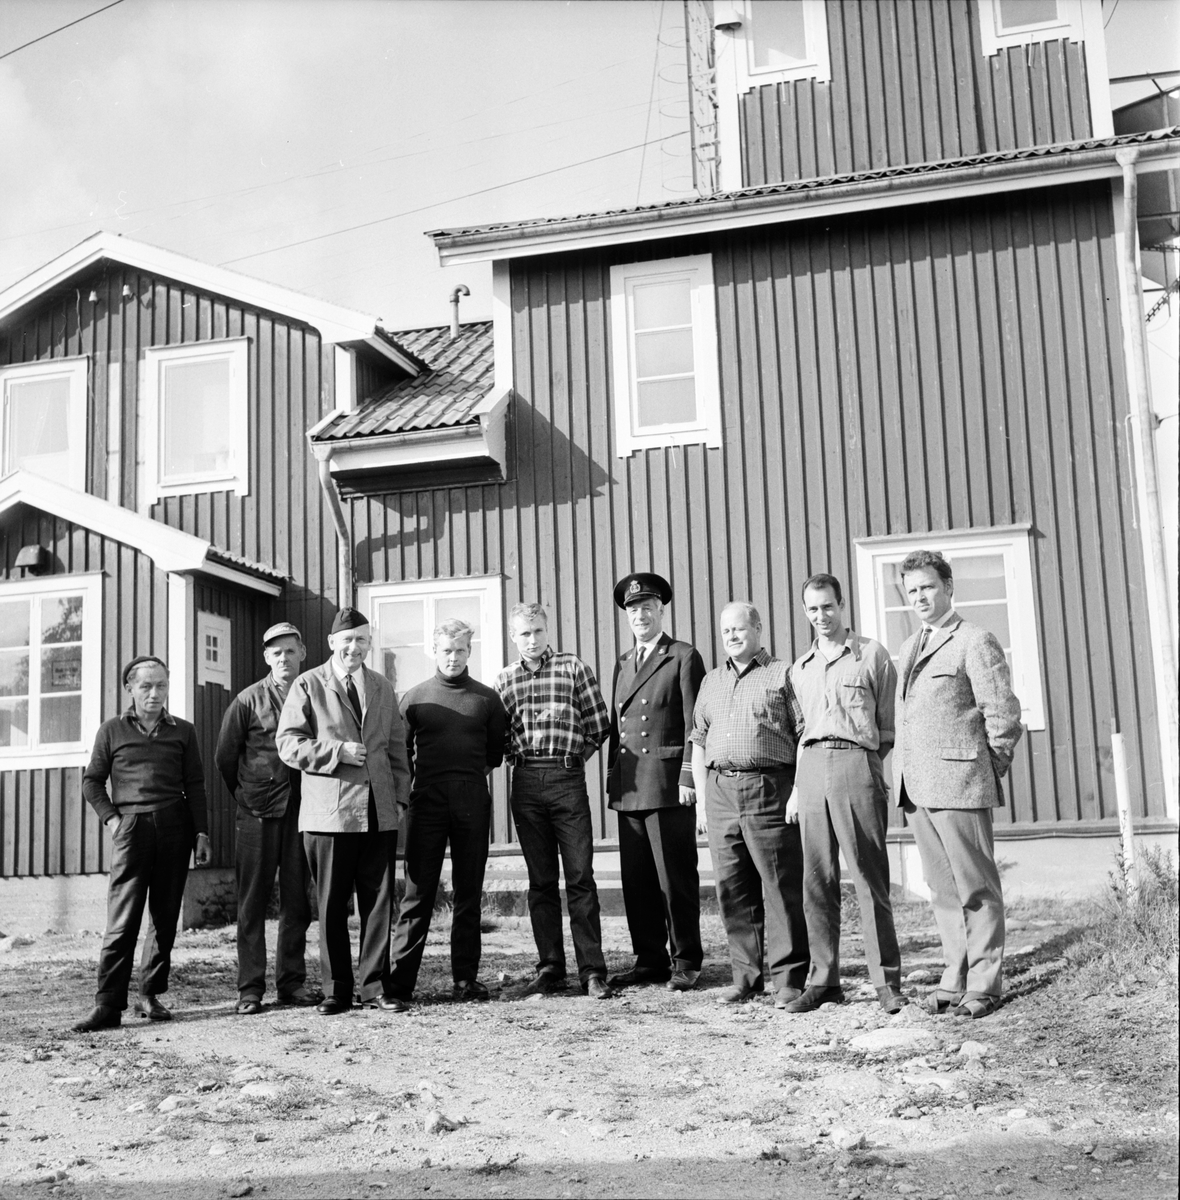 Rönnskärs lotsplats.
Sjömanspastorn på besök.
14/9-1966